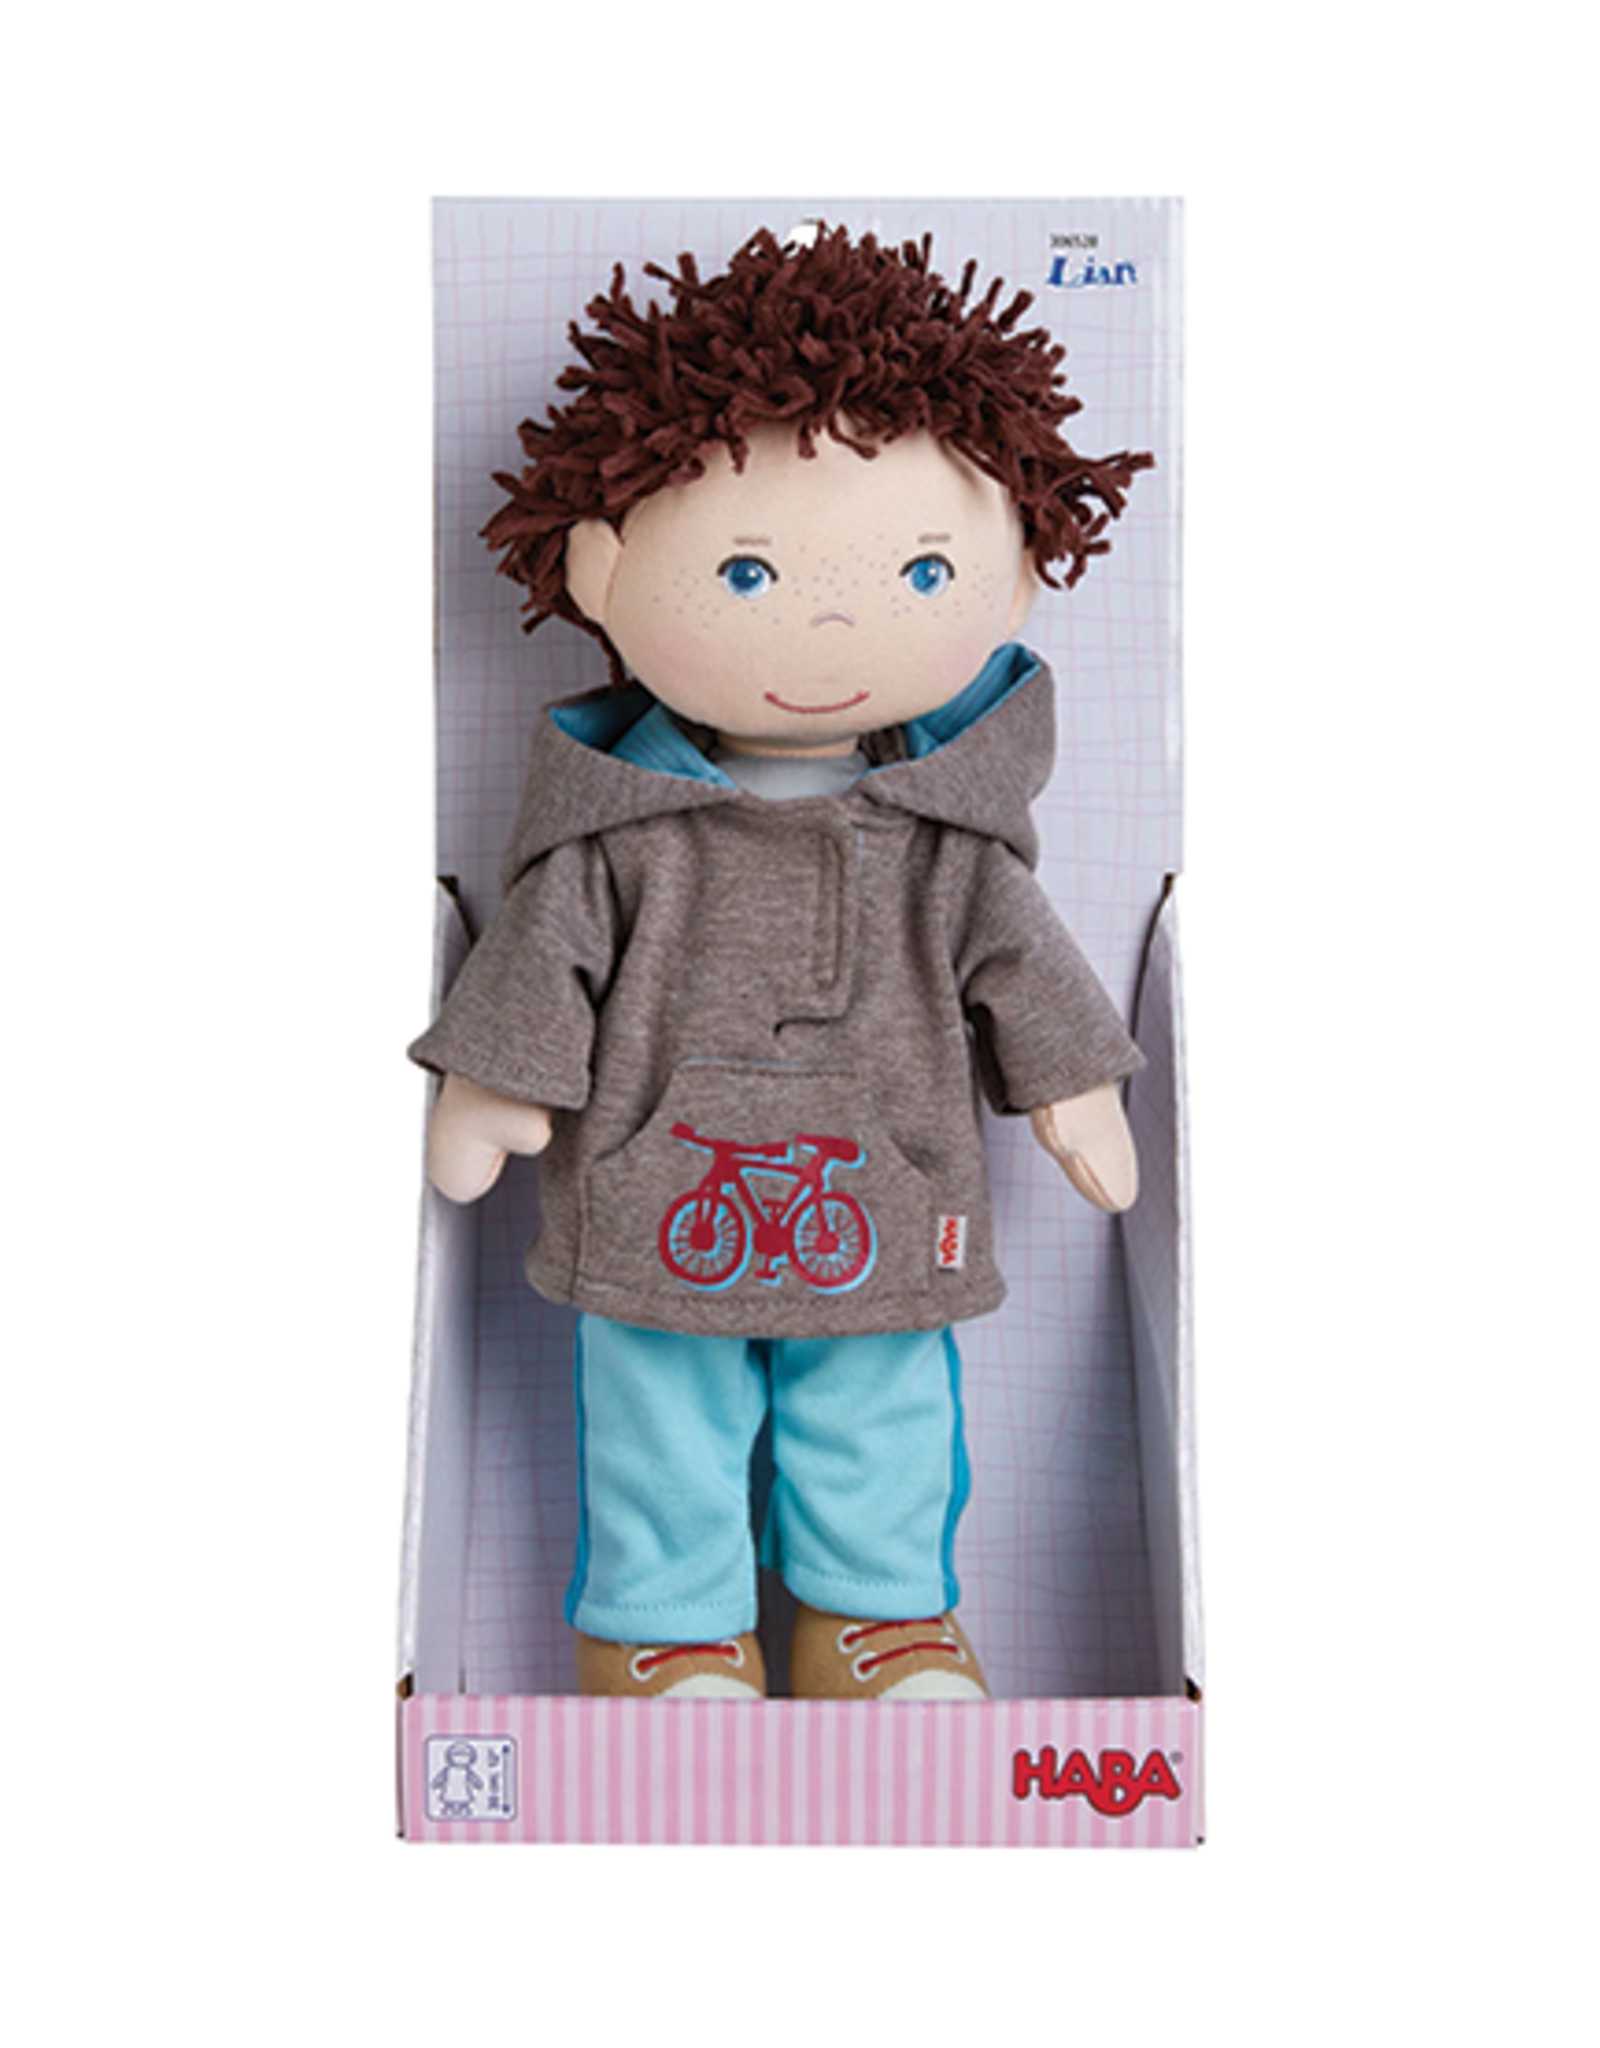 Haba HABA® Lian Soft Doll